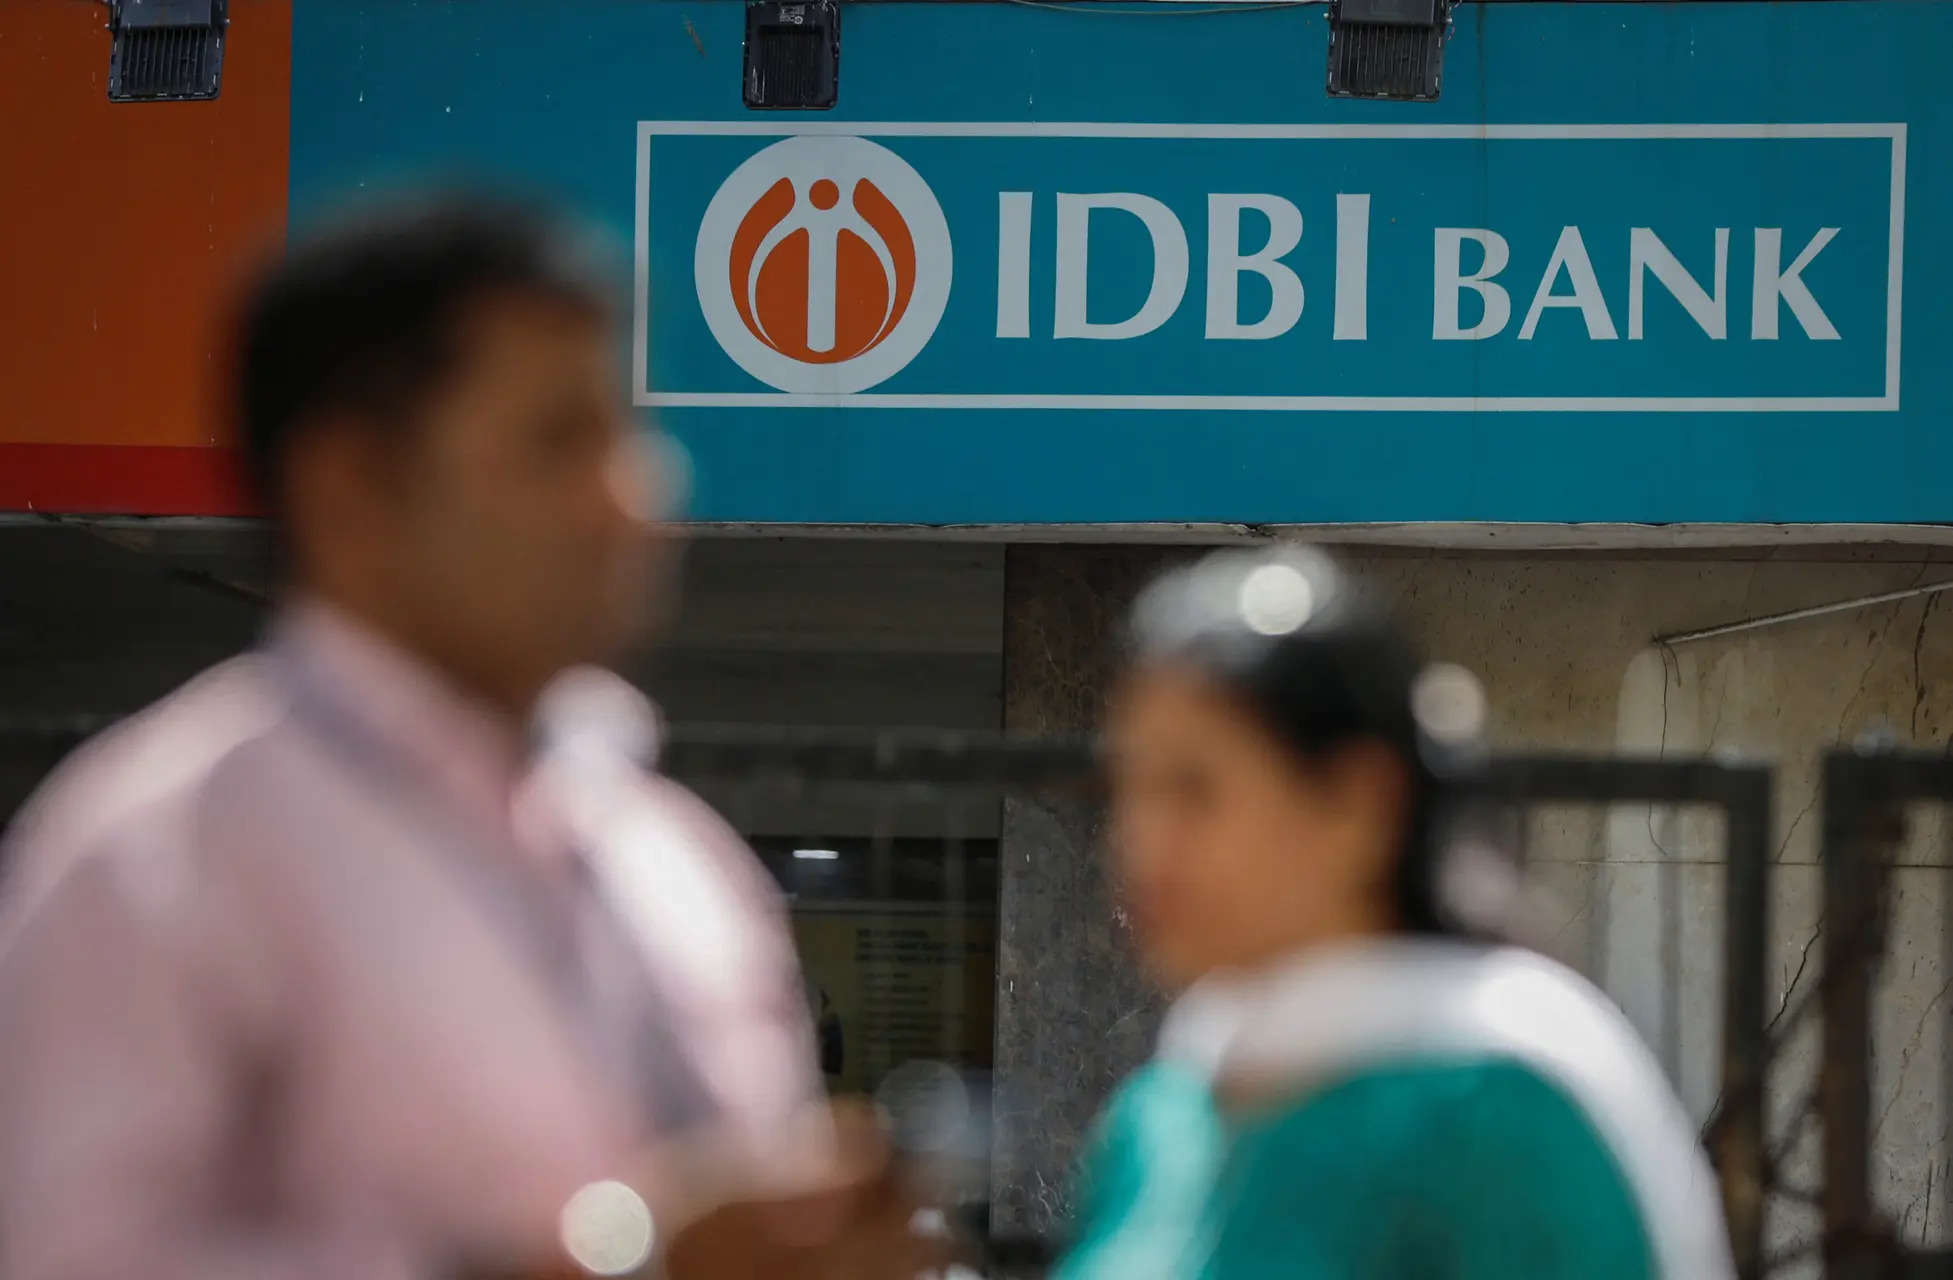 Kotak to buy IDBI Bank? RBI identifies eligible bidders for state bank's stake sale 